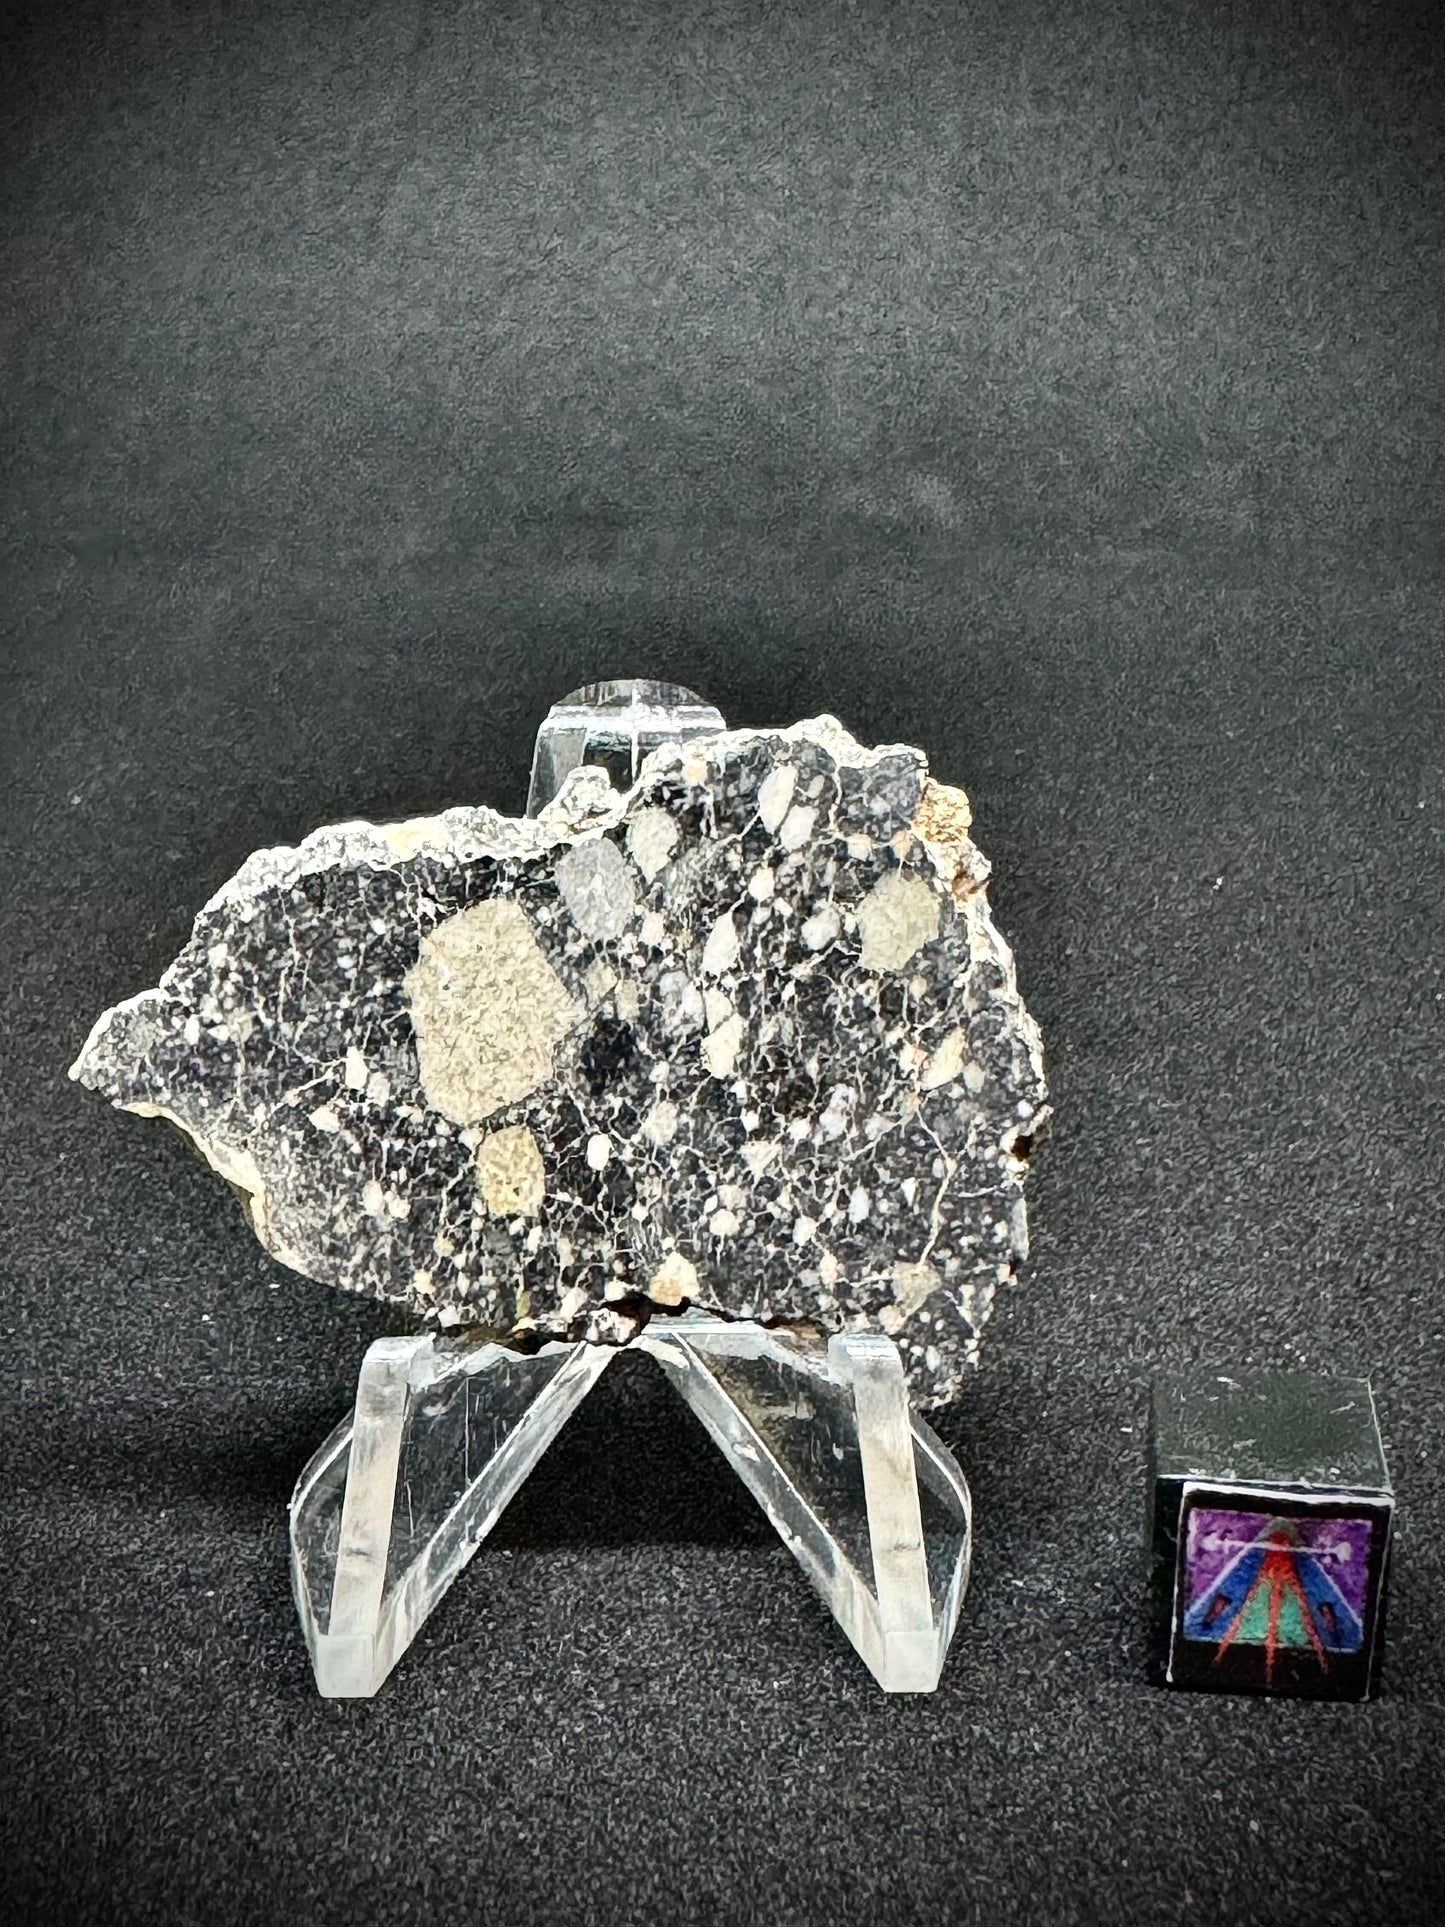 NWA 14685 Lunar Fragmental Breccia - Full Slice - 7.5g